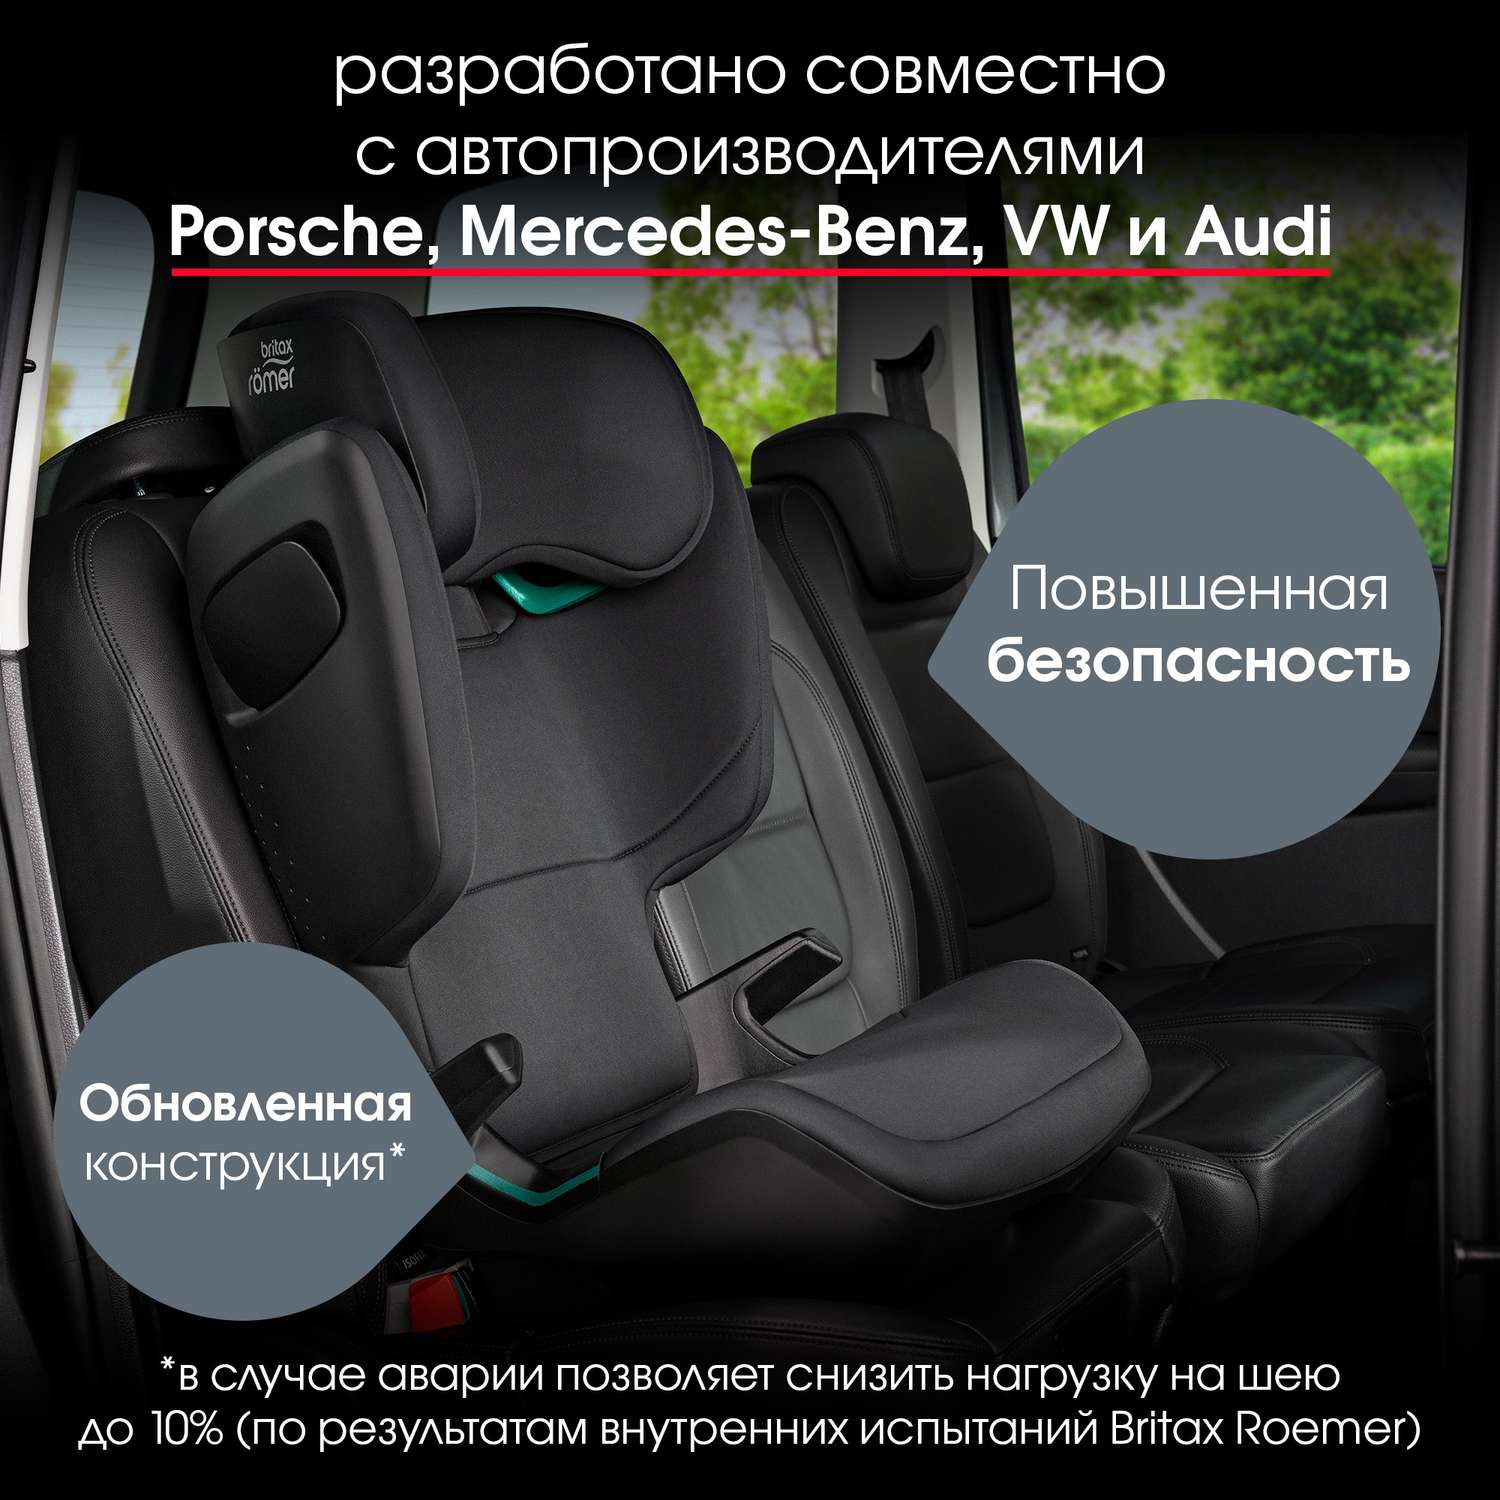 Britax Römer Kidfix M i-Size car seat